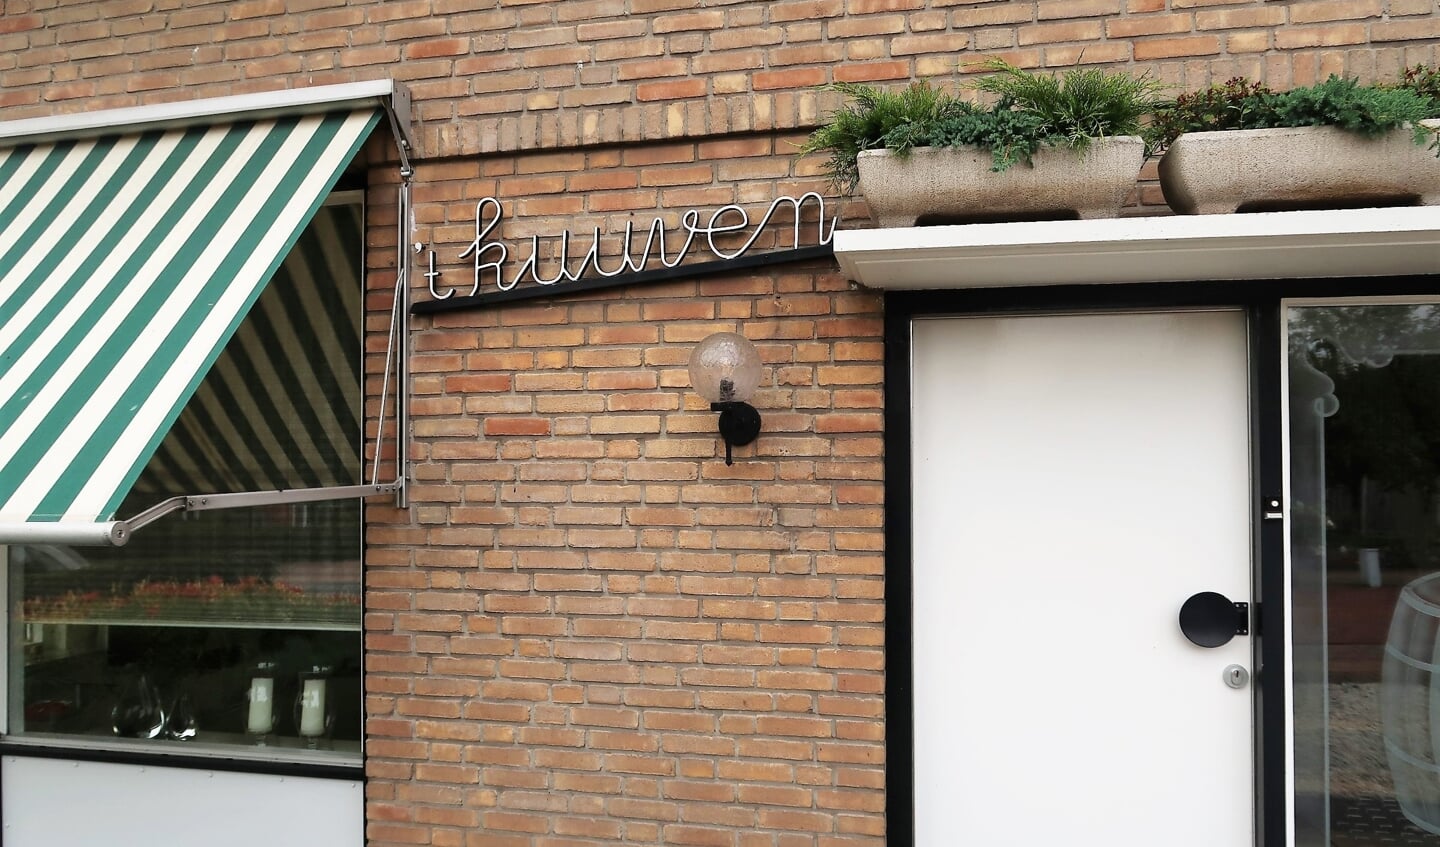 De voorzijde van de woning ('t kuuven) van Antoon te Vaarwerk in Lievelde. Foto: Theo Huijskes